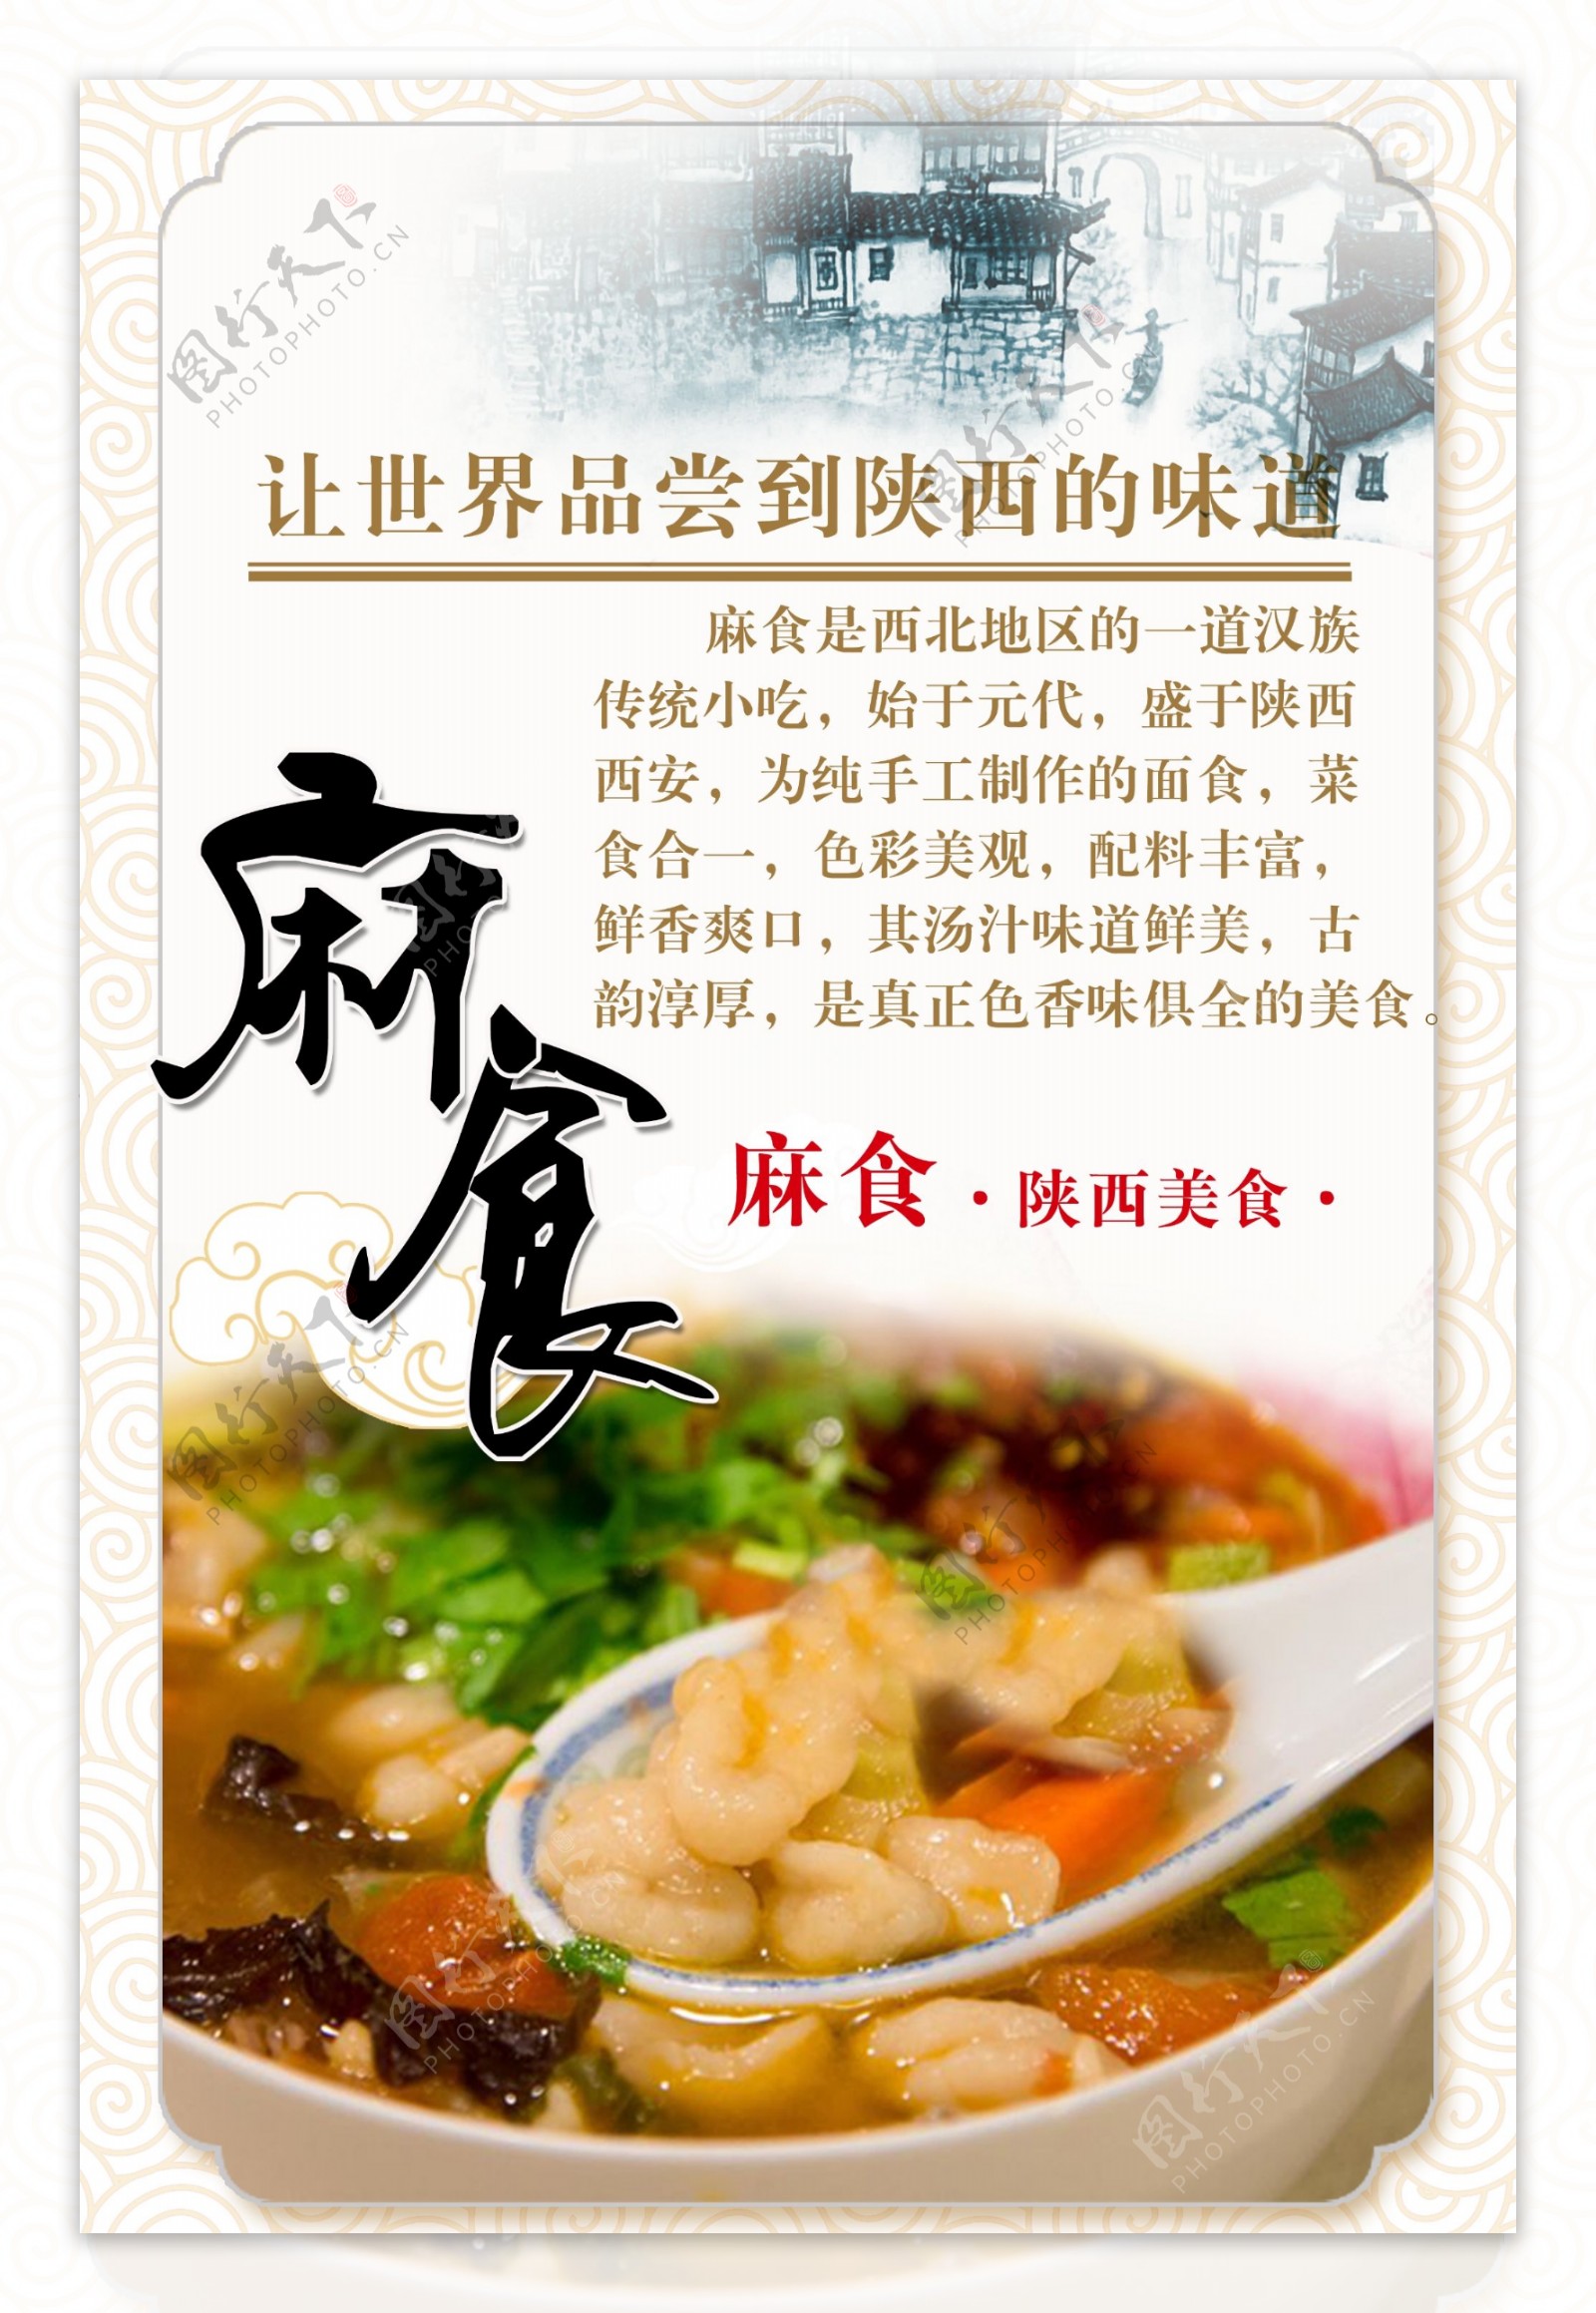 陕西麻食宣传海报